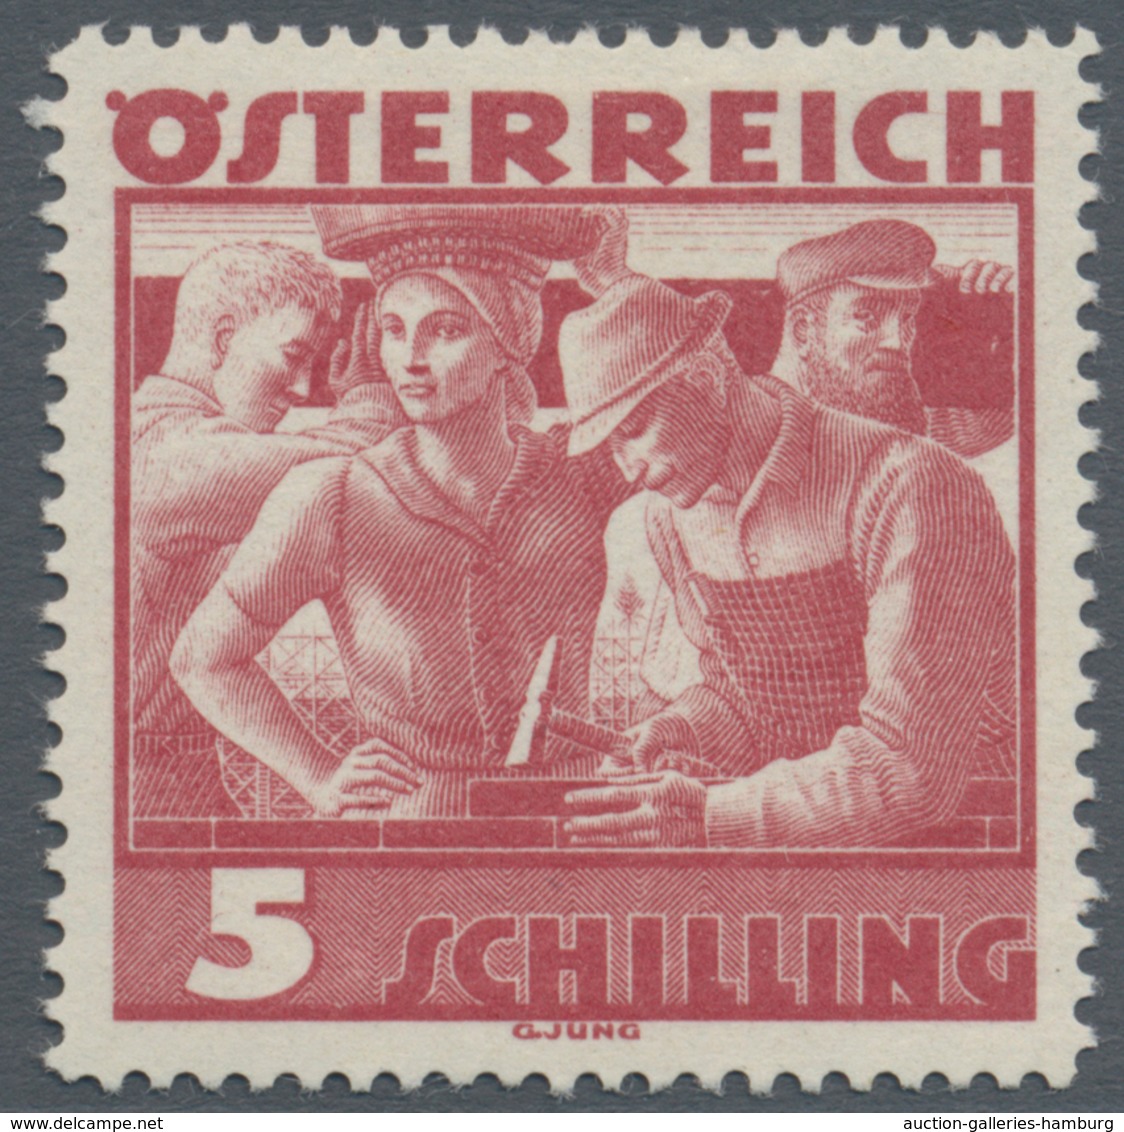 Österreich: 1934, Freimarken "Trachten", 5 Sch. "Städtische Arbeit", Vier Gezähnte Offsetdruck-Probe - Ungebraucht